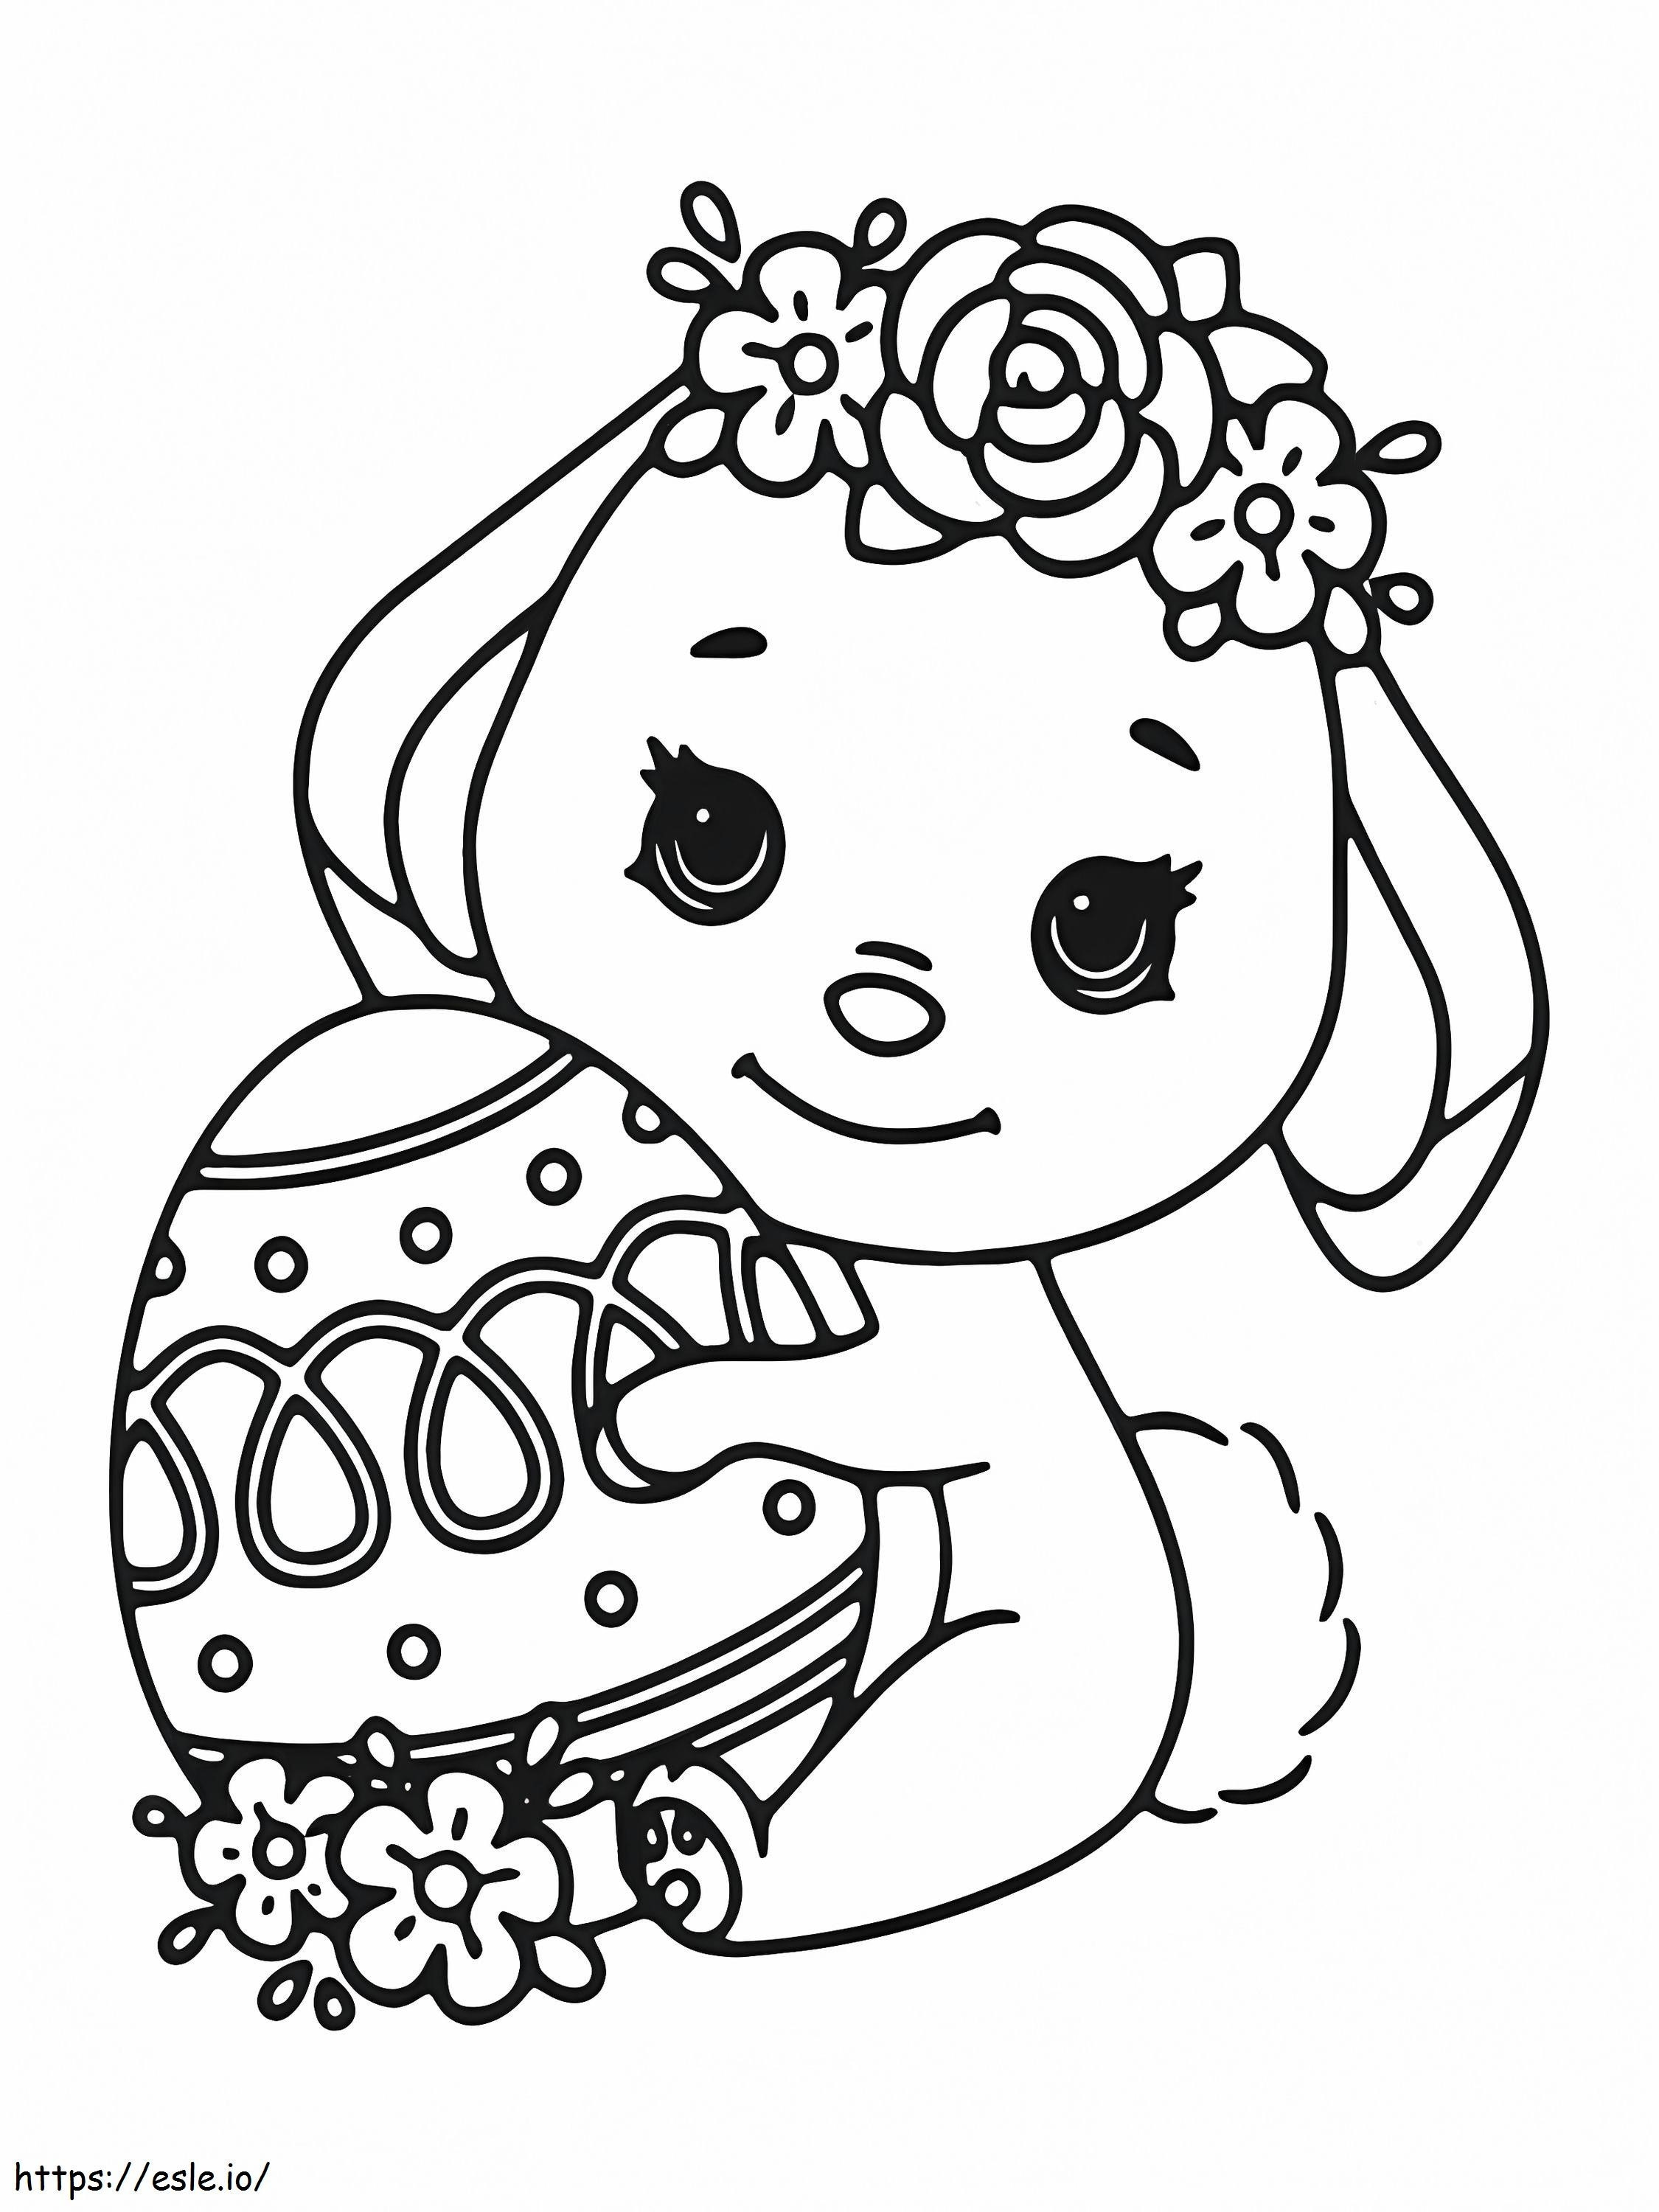 Coloriage Petit lapin de Pâques tenant un oeuf à imprimer dessin